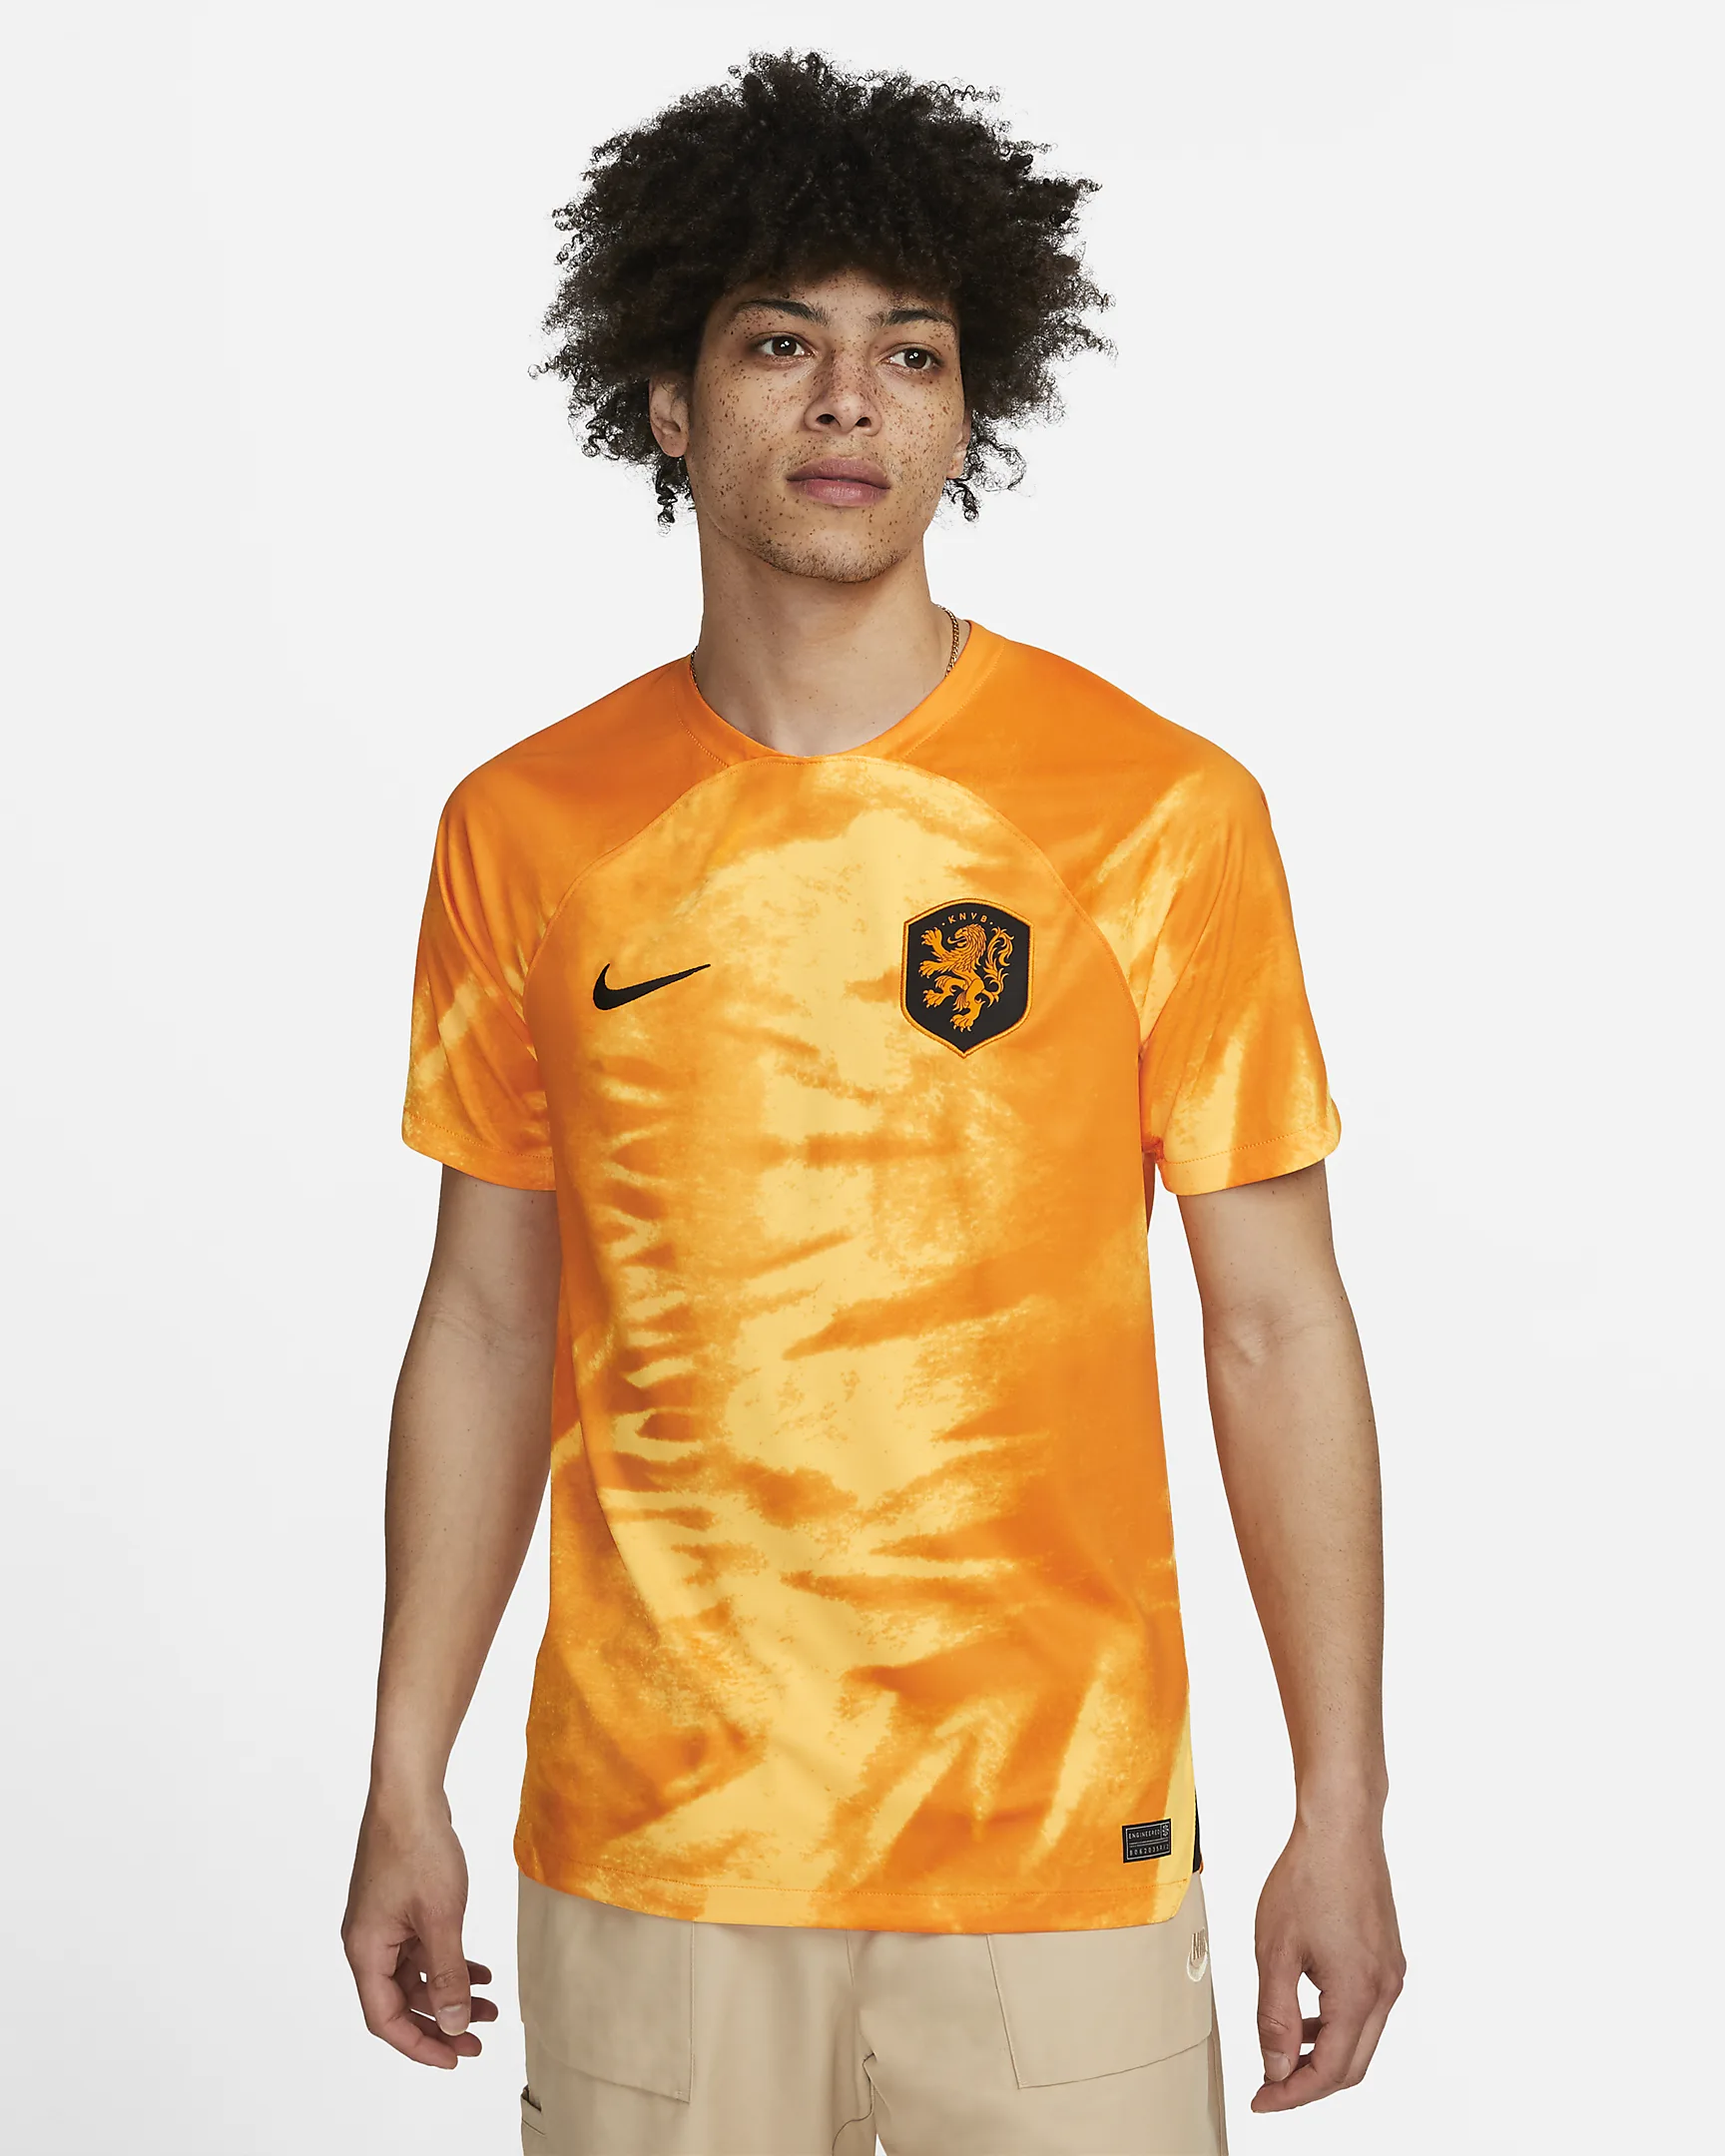 dutch world cup soccer jersey